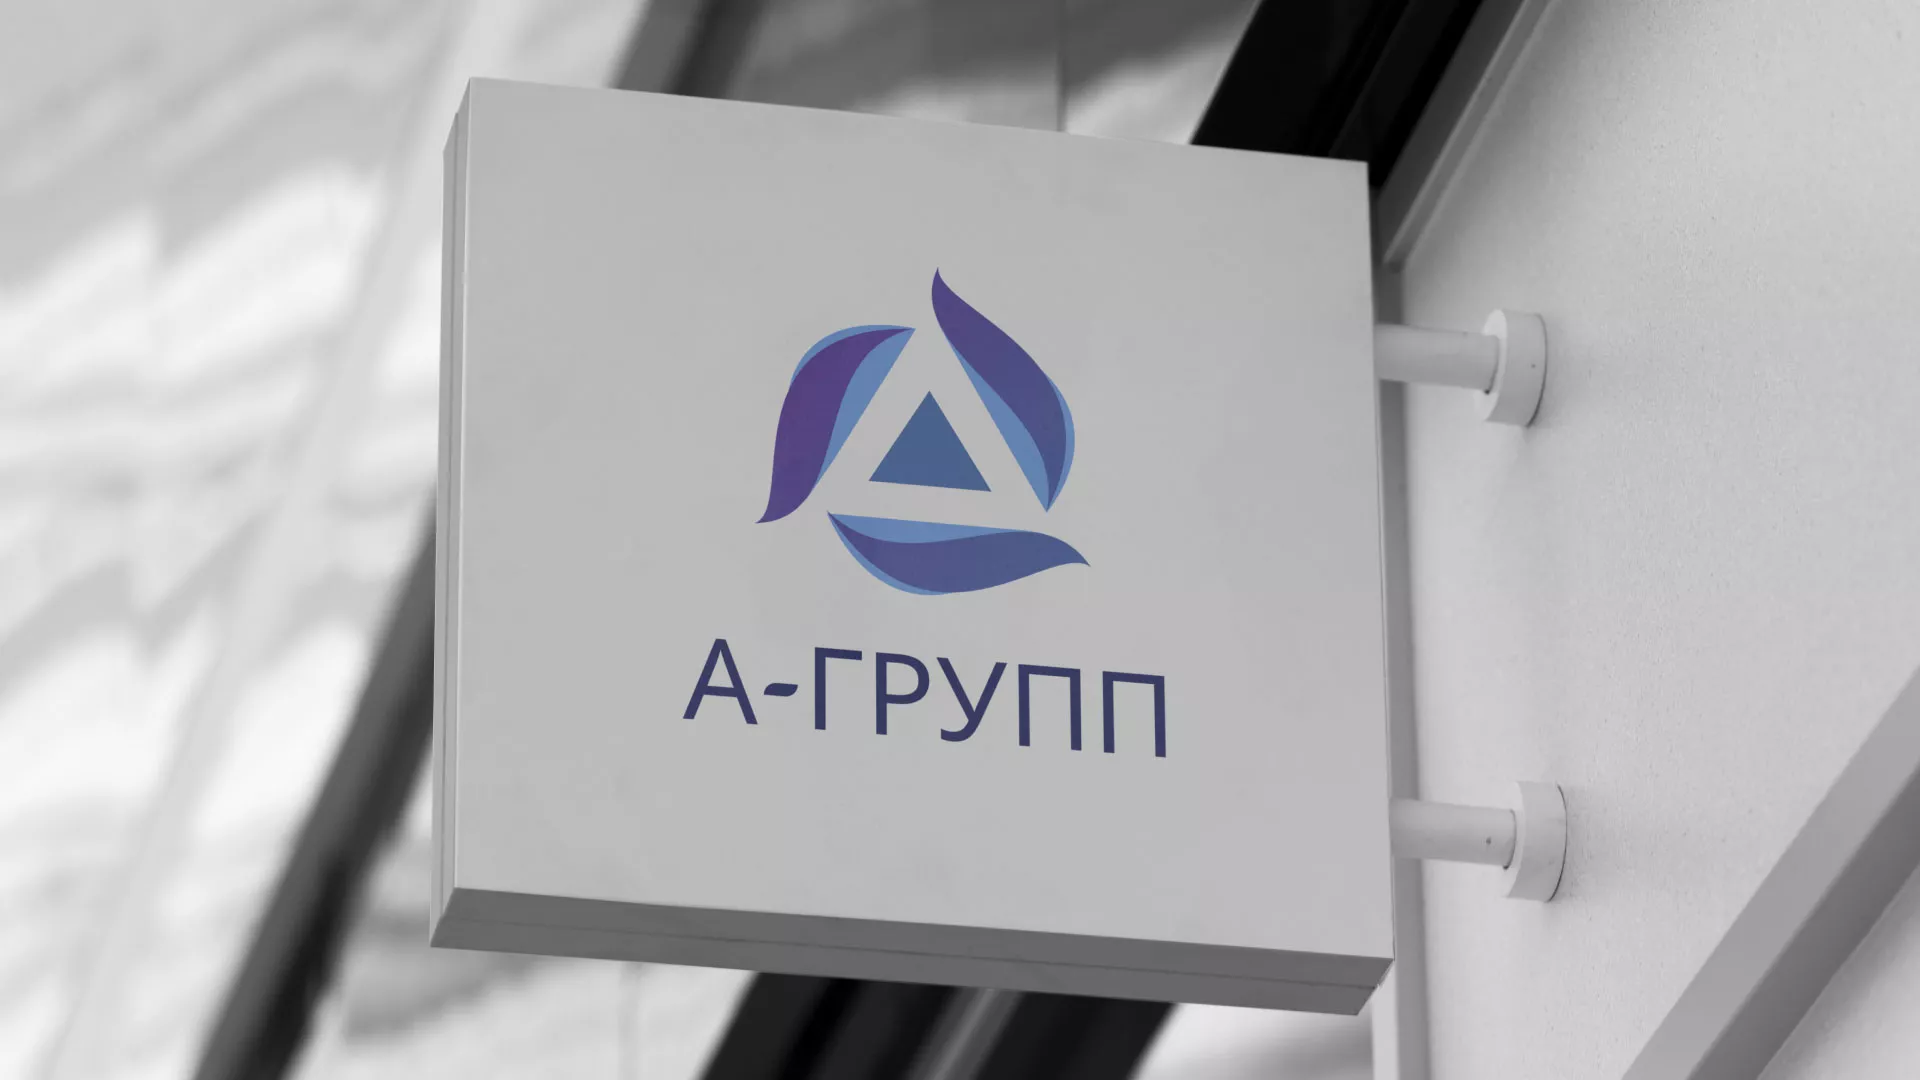 Создание логотипа компании «А-ГРУПП» в Шенкурске